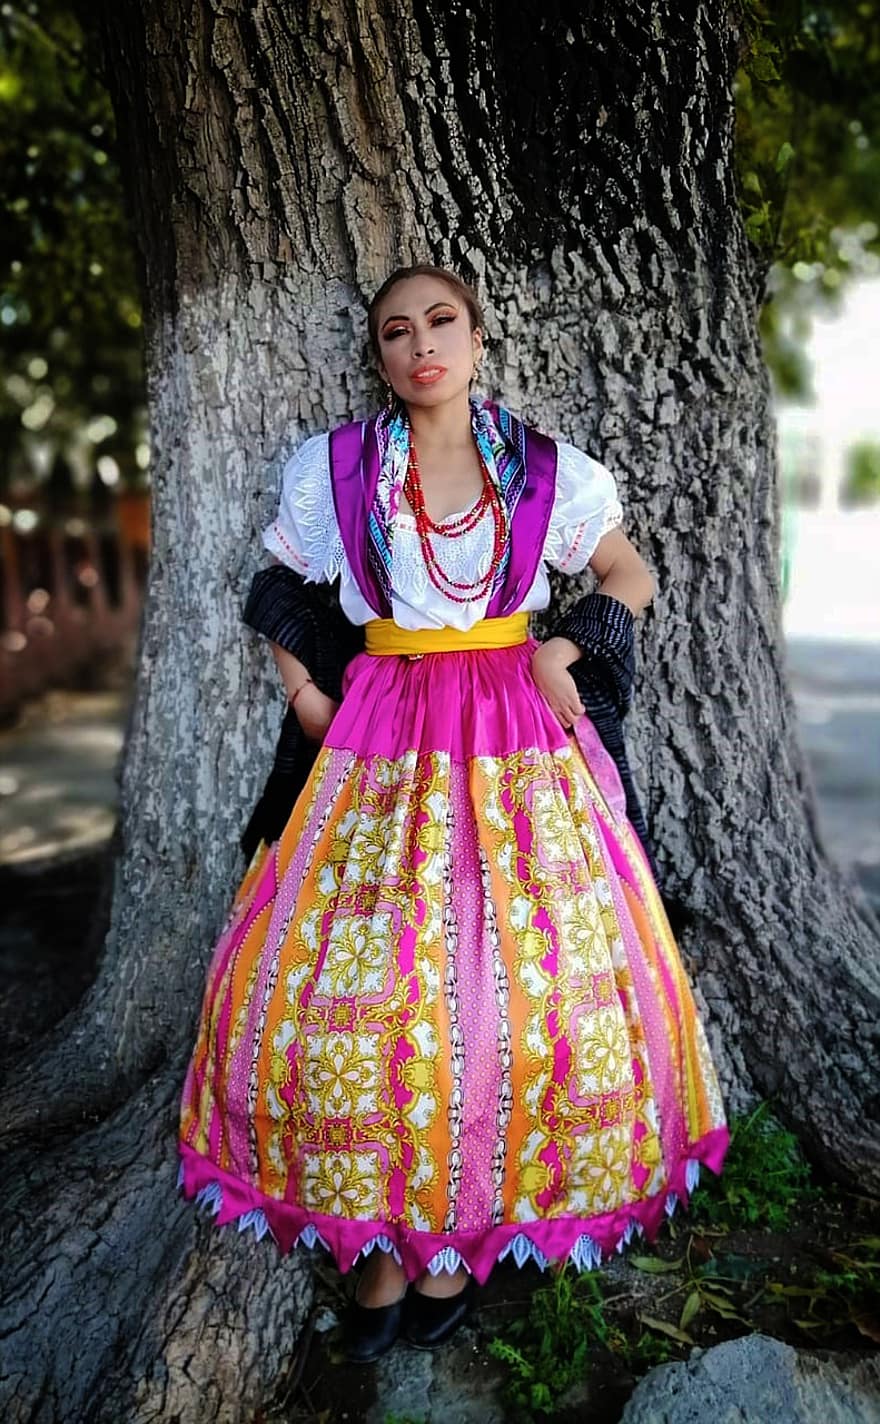 mujer, bailarín, folklore, danza, tradicional, tradicion, disfraz, vestido